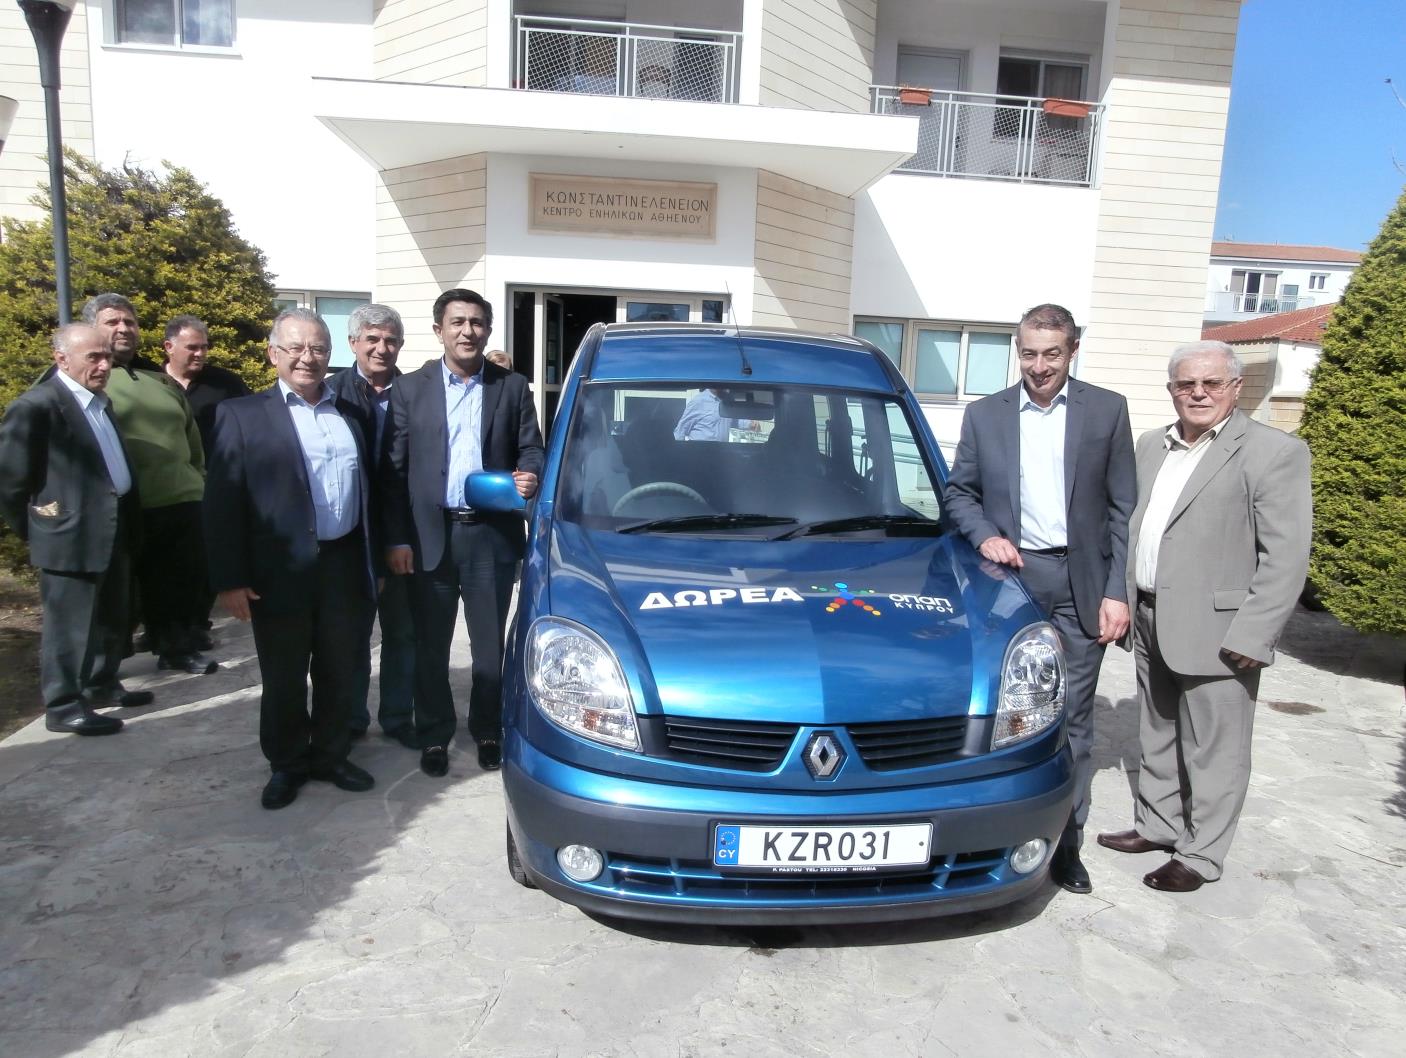 συνήθειες, ήθη και έθιμα. Στην εκδήλωσή μας τιμήσαμε τον ΟΠΑΠ Κύπρου για την μεγάλη δωρεά ενός αναπηρικού αυτοκινήτου.